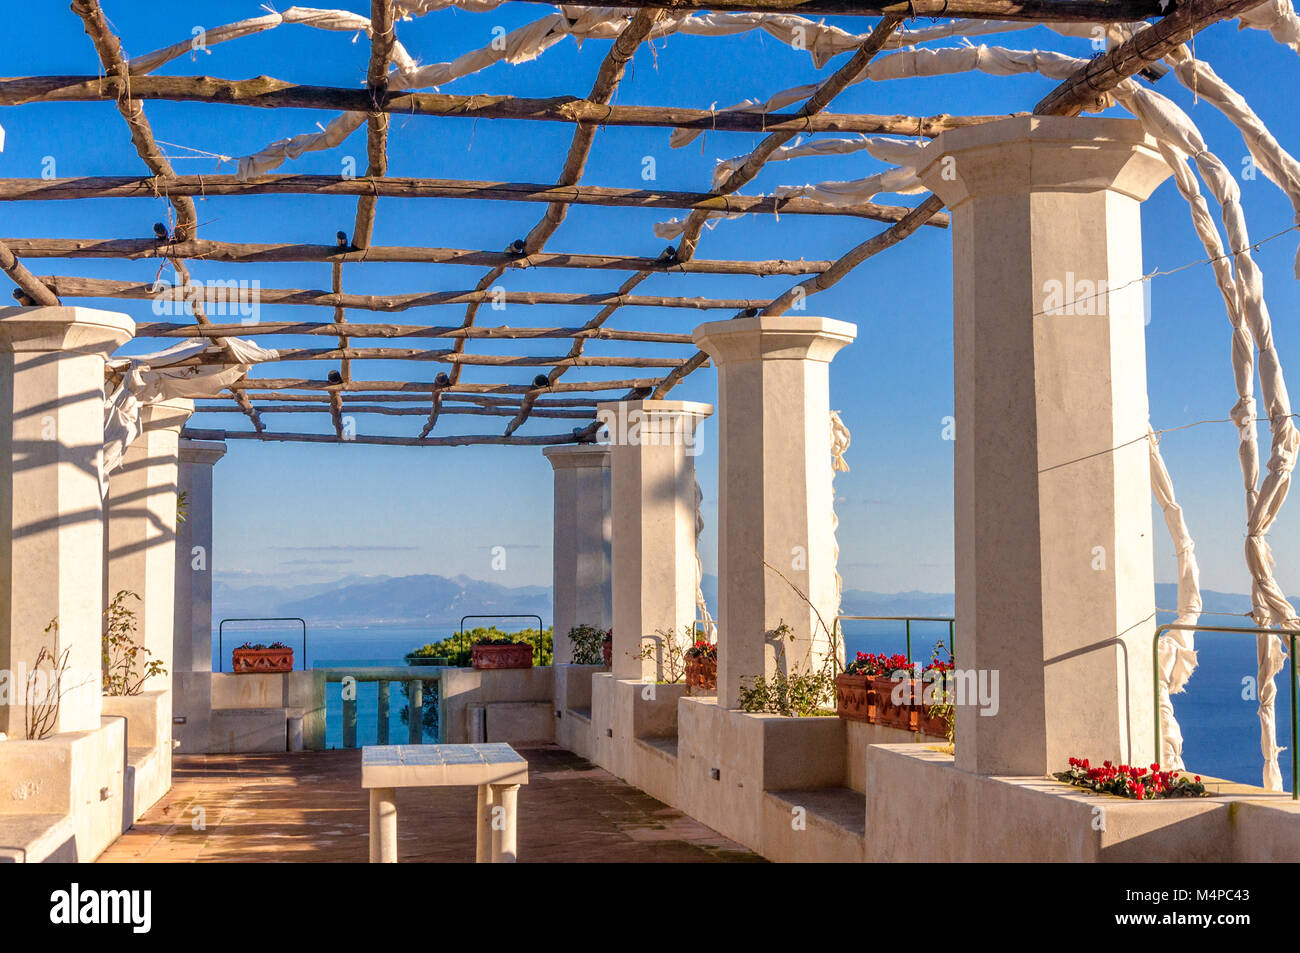 La terrazza panoramica a Villa Rufolo a Ravello Foto Stock